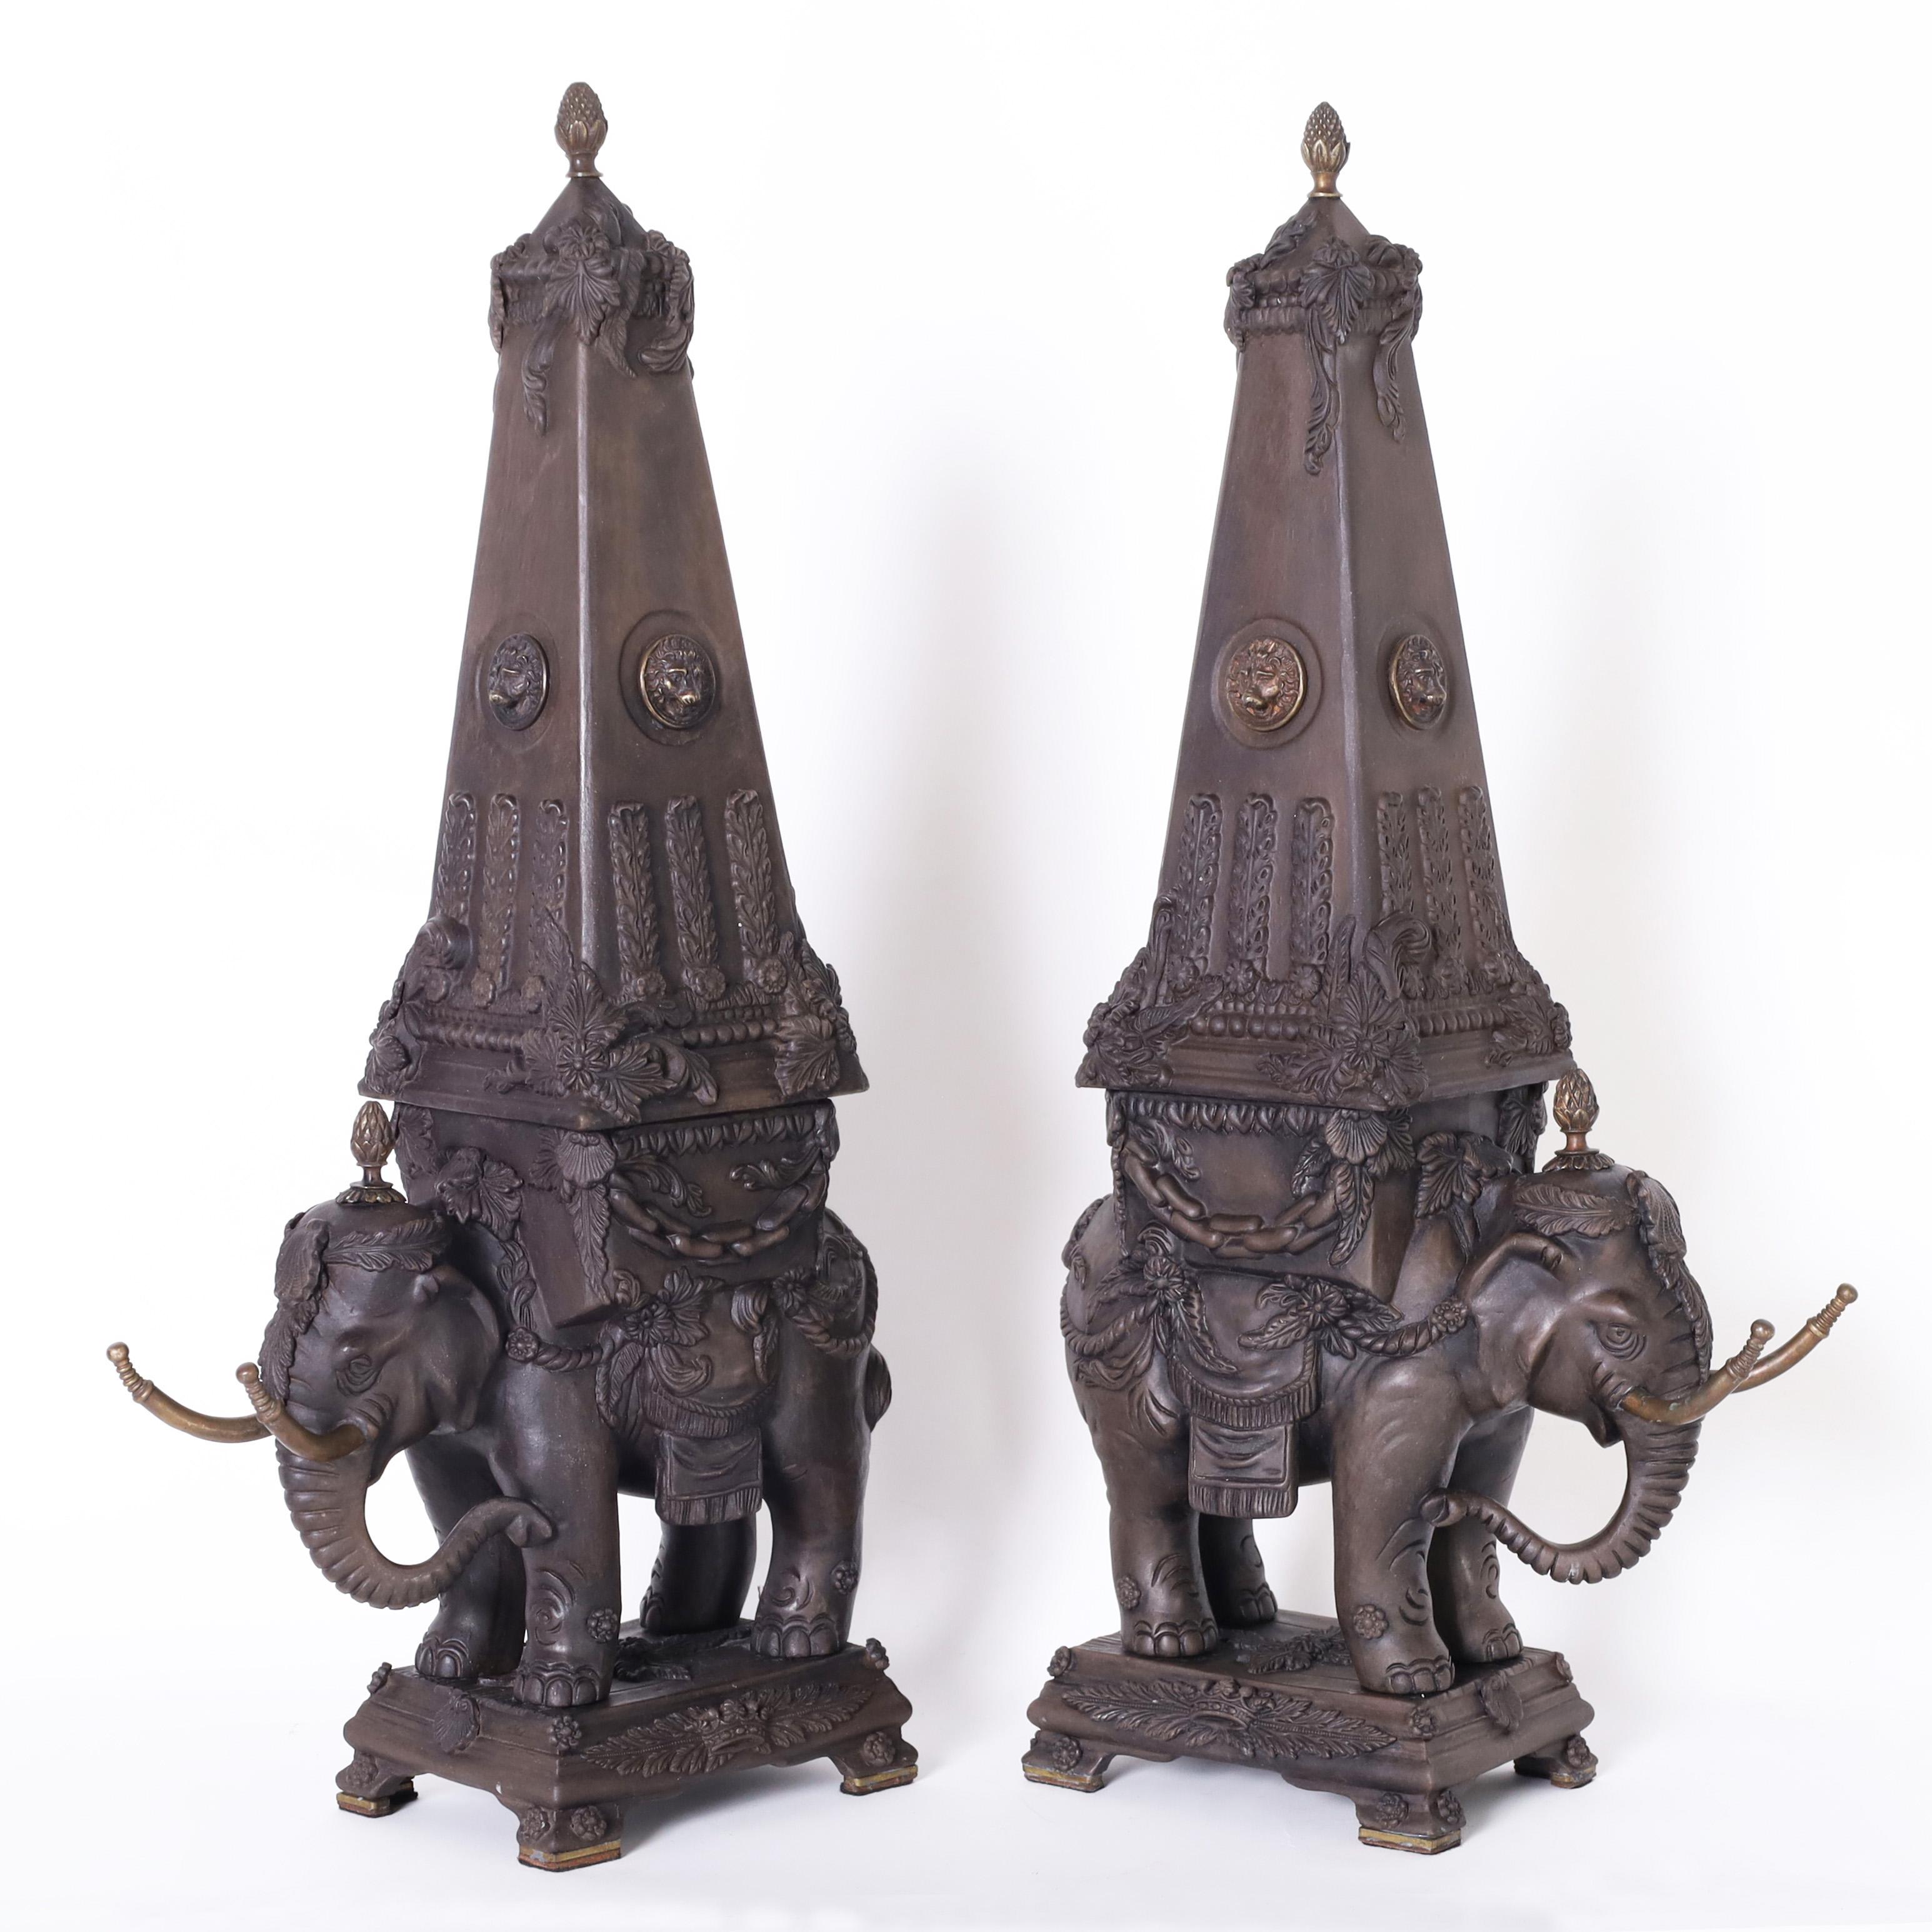 Vintage Paar italienische neoklassische Garnituren oder Kunstobjekte, die Elefanten mit Obelisken darstellen. Sie sind aus Keramik oder Steingut mit Biskuit-Finish gefertigt und mit bronzenen Endstücken, Löwenköpfen und Stoßzähnen verziert.